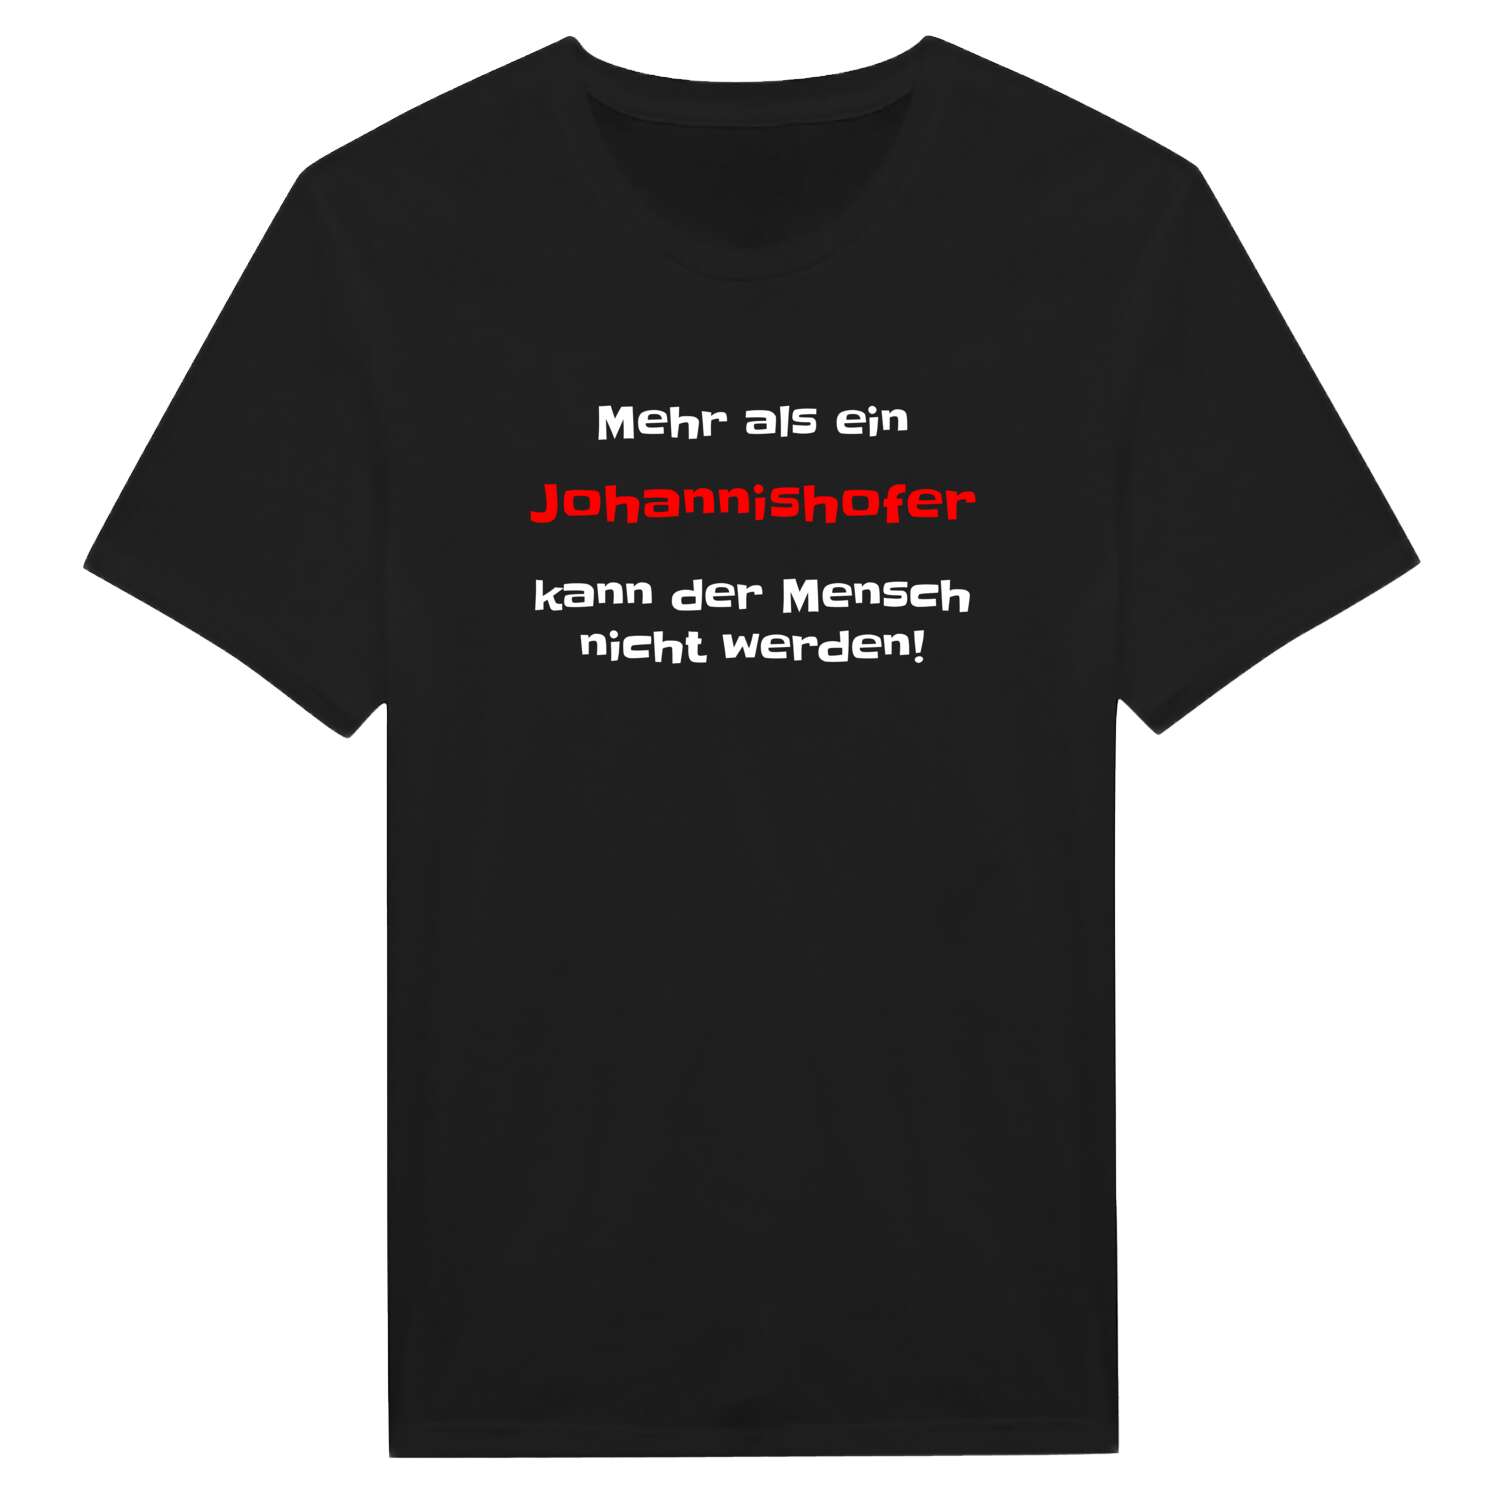 Johannishof T-Shirt »Mehr als ein«